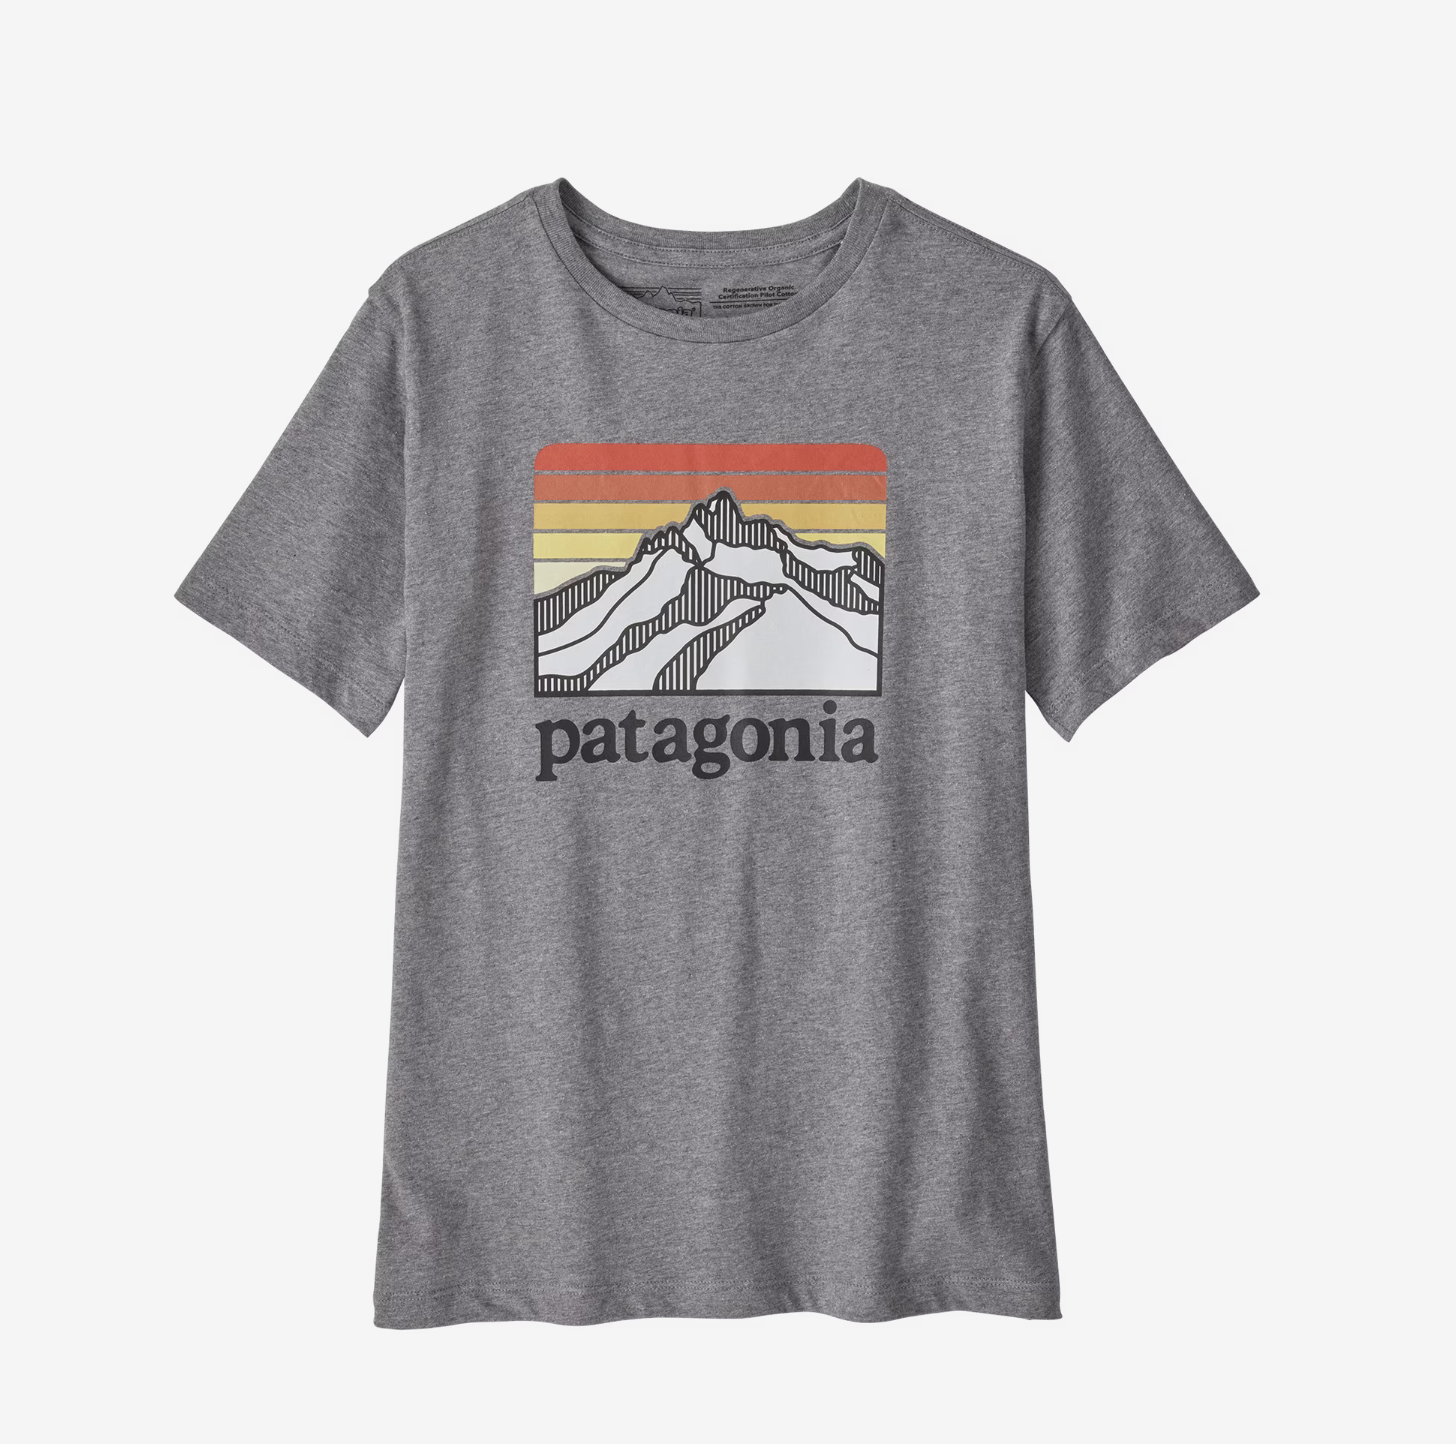 Patagonia - K'S Regenerative T-Shirt Llgh